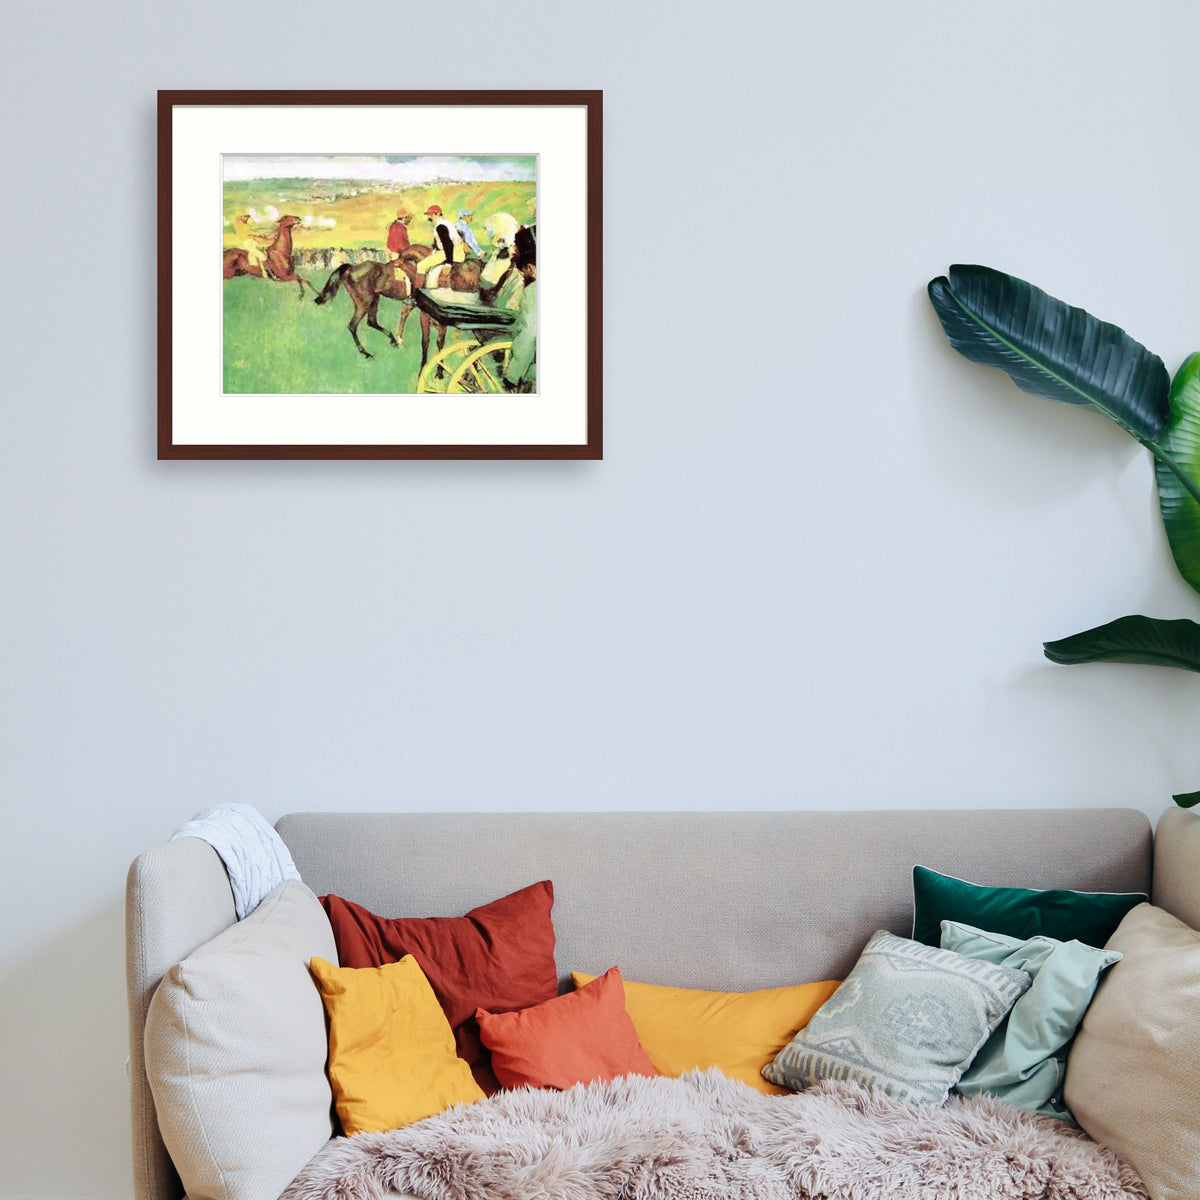 Degas - Le champ de courses Le Cadre Décoration intérieure Tableaux cadre bois affiche poster oeuvre d'art rapport qualité prix pas cher peintre célèbre